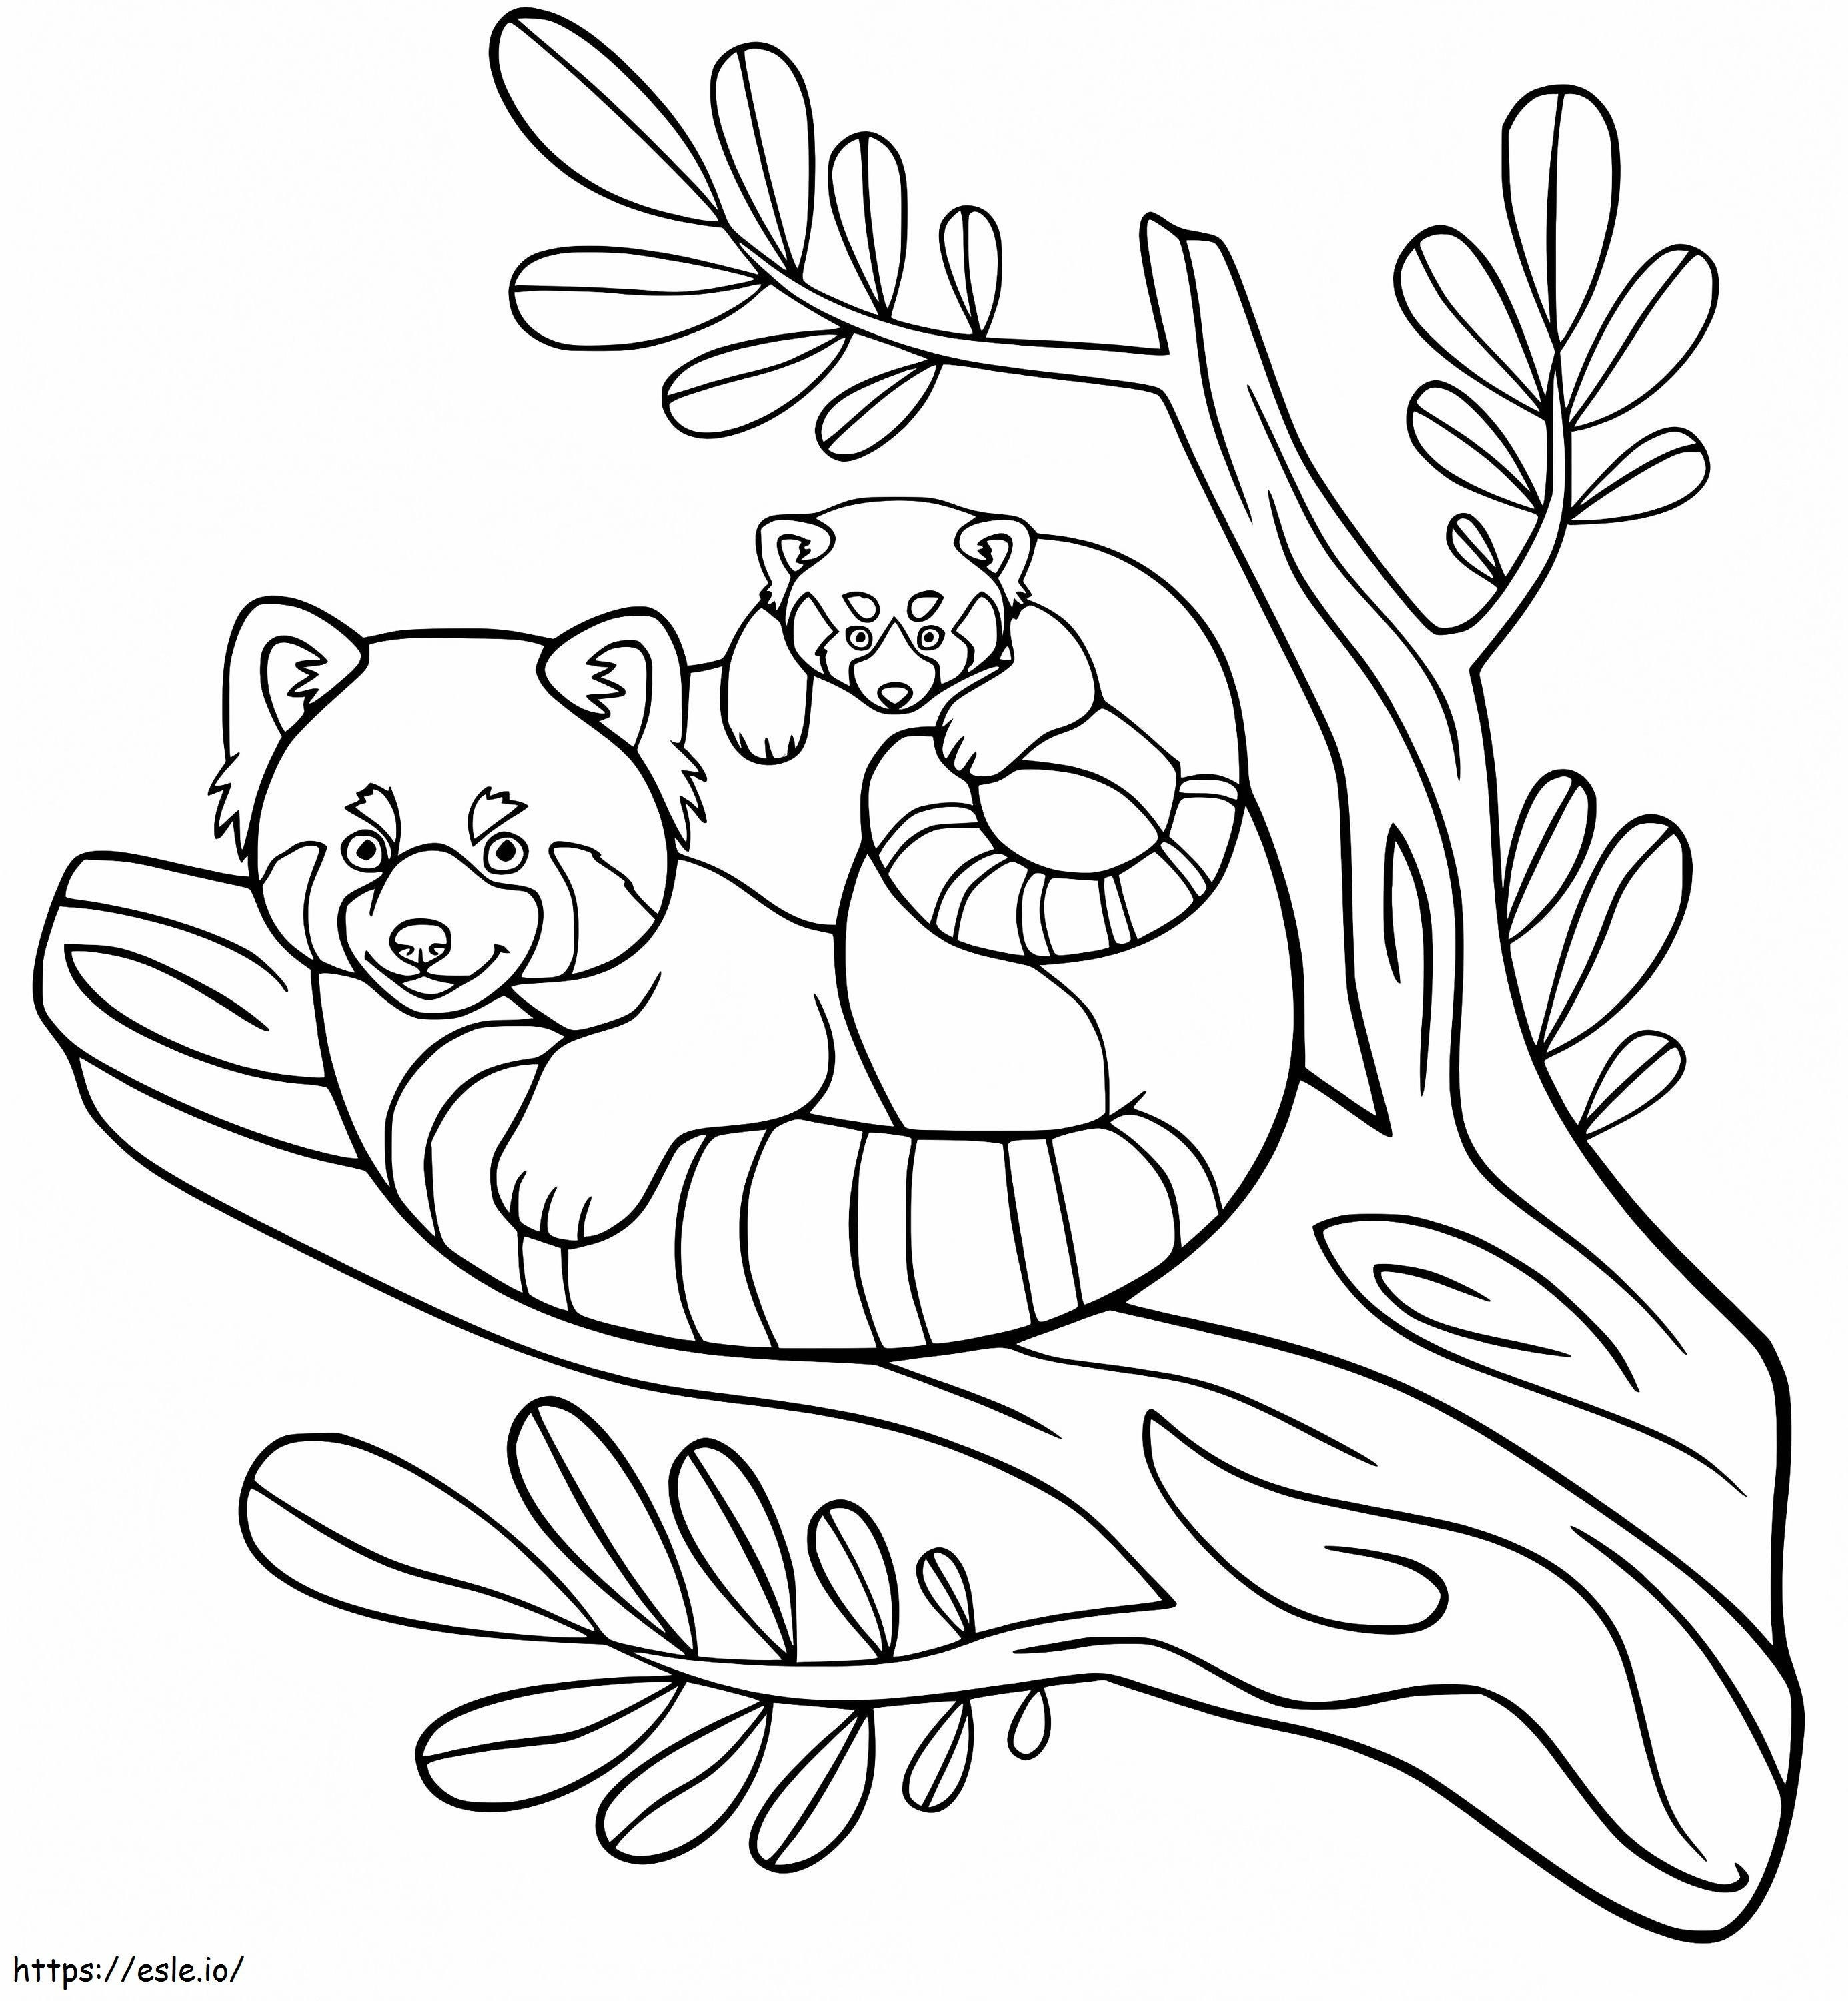 Coloriage Famille Panda Roux à imprimer dessin